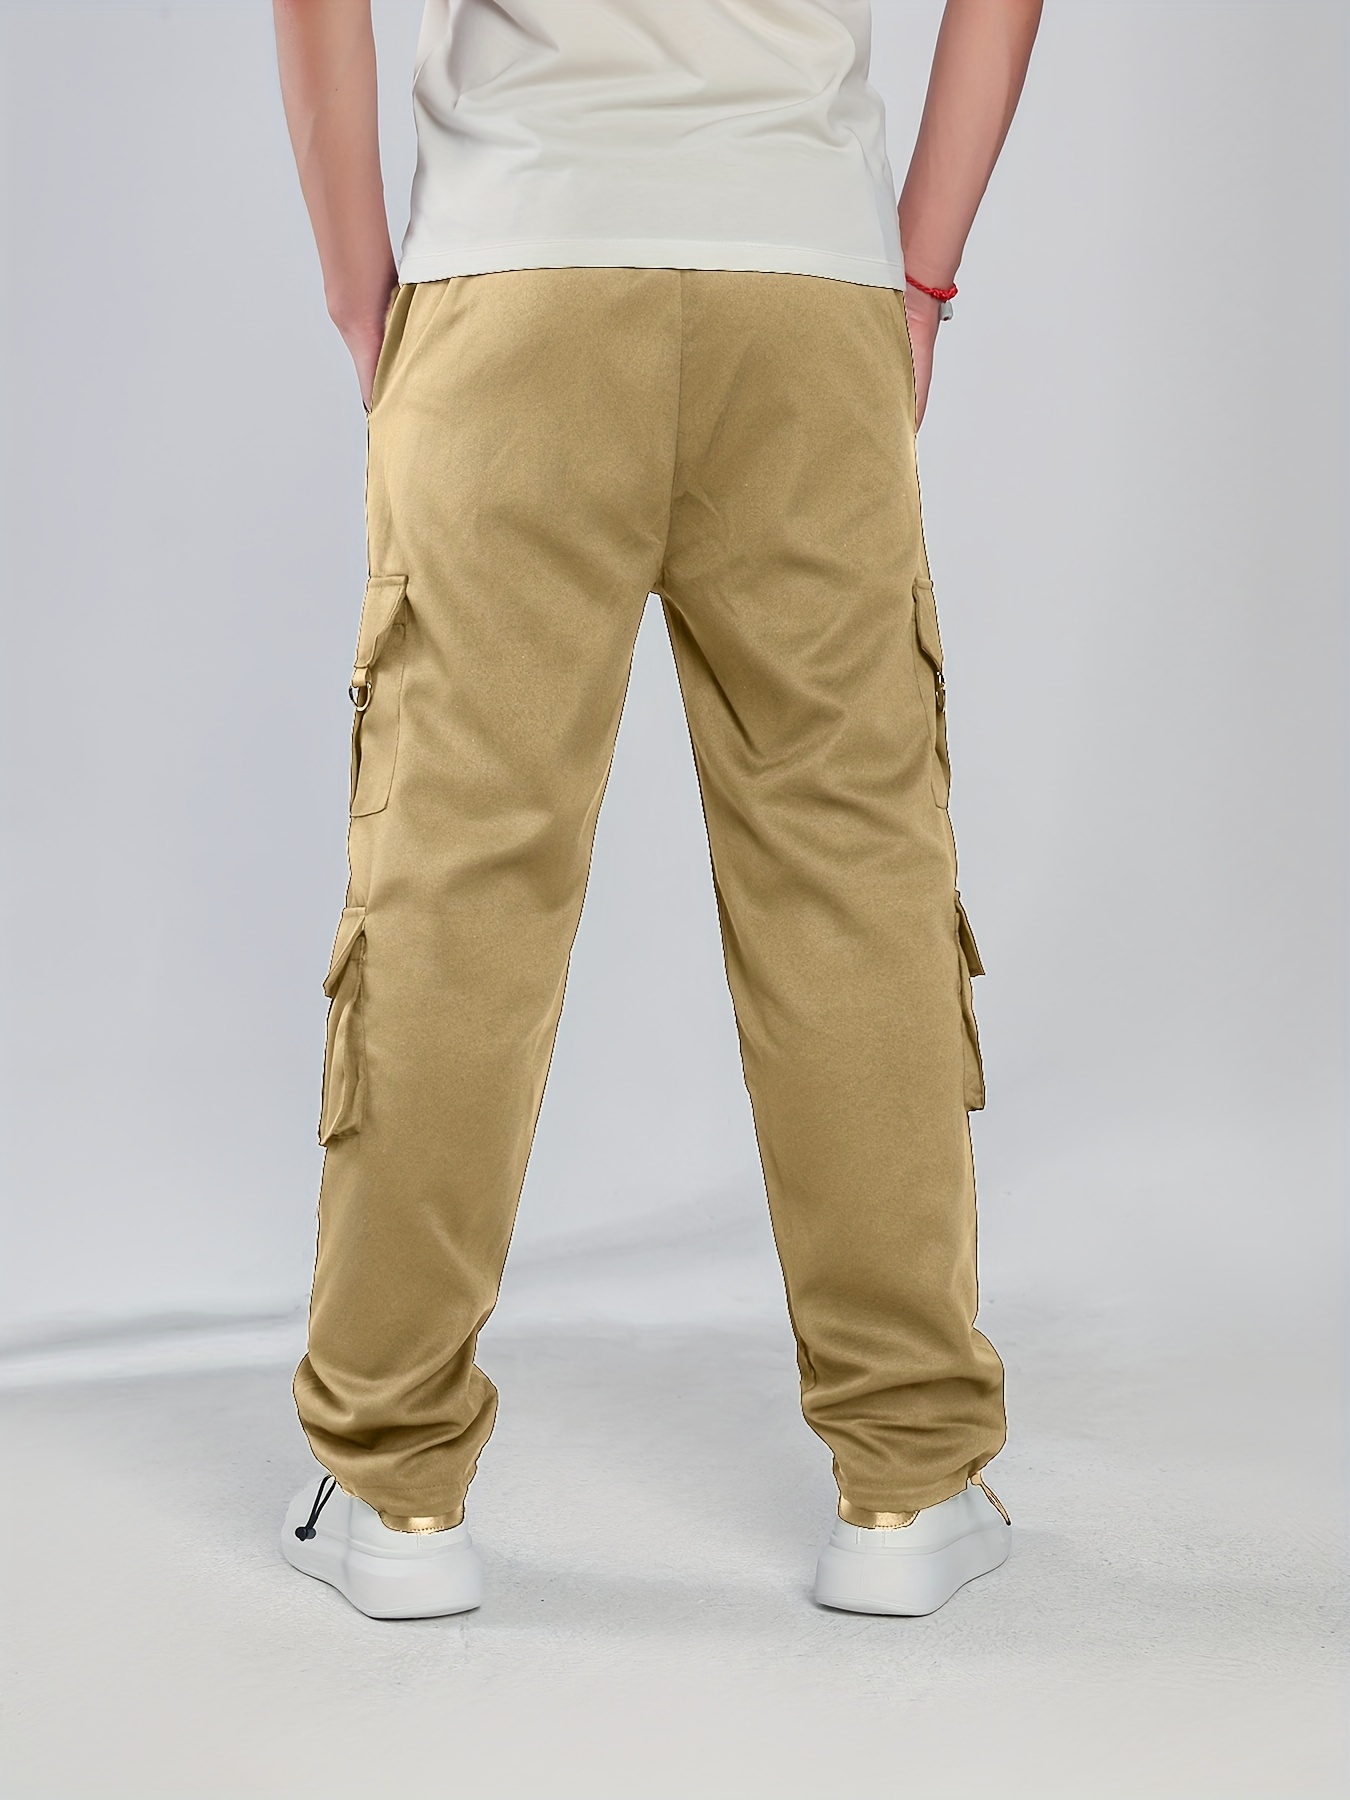  Pantalones de trabajo para hombre, color liso, ajuste